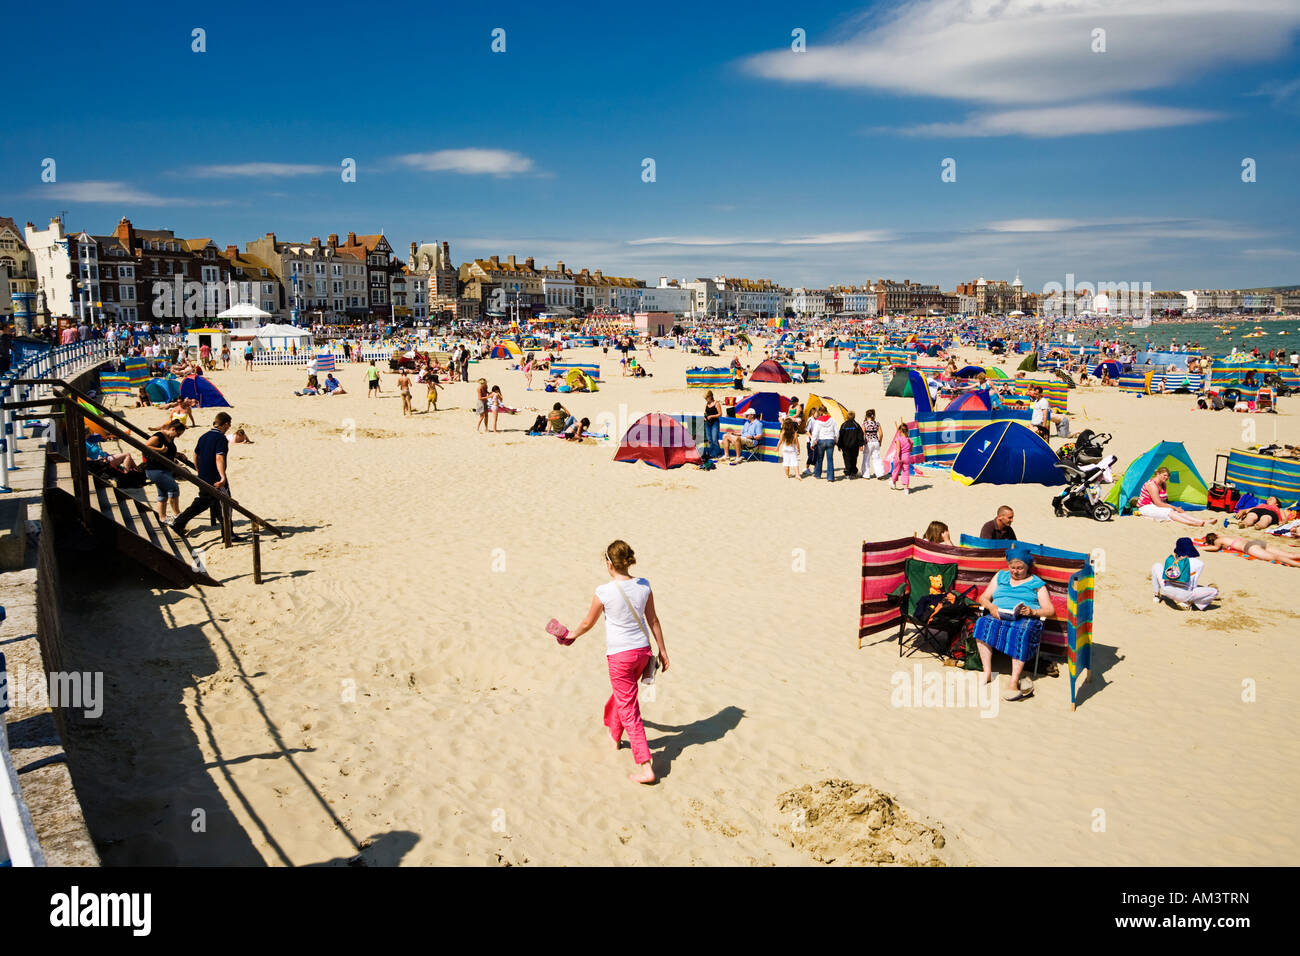 Leute, Sonnenbaden am Strand von Weymouth im Sommer, Dorset Küste, England, UK Stockfoto